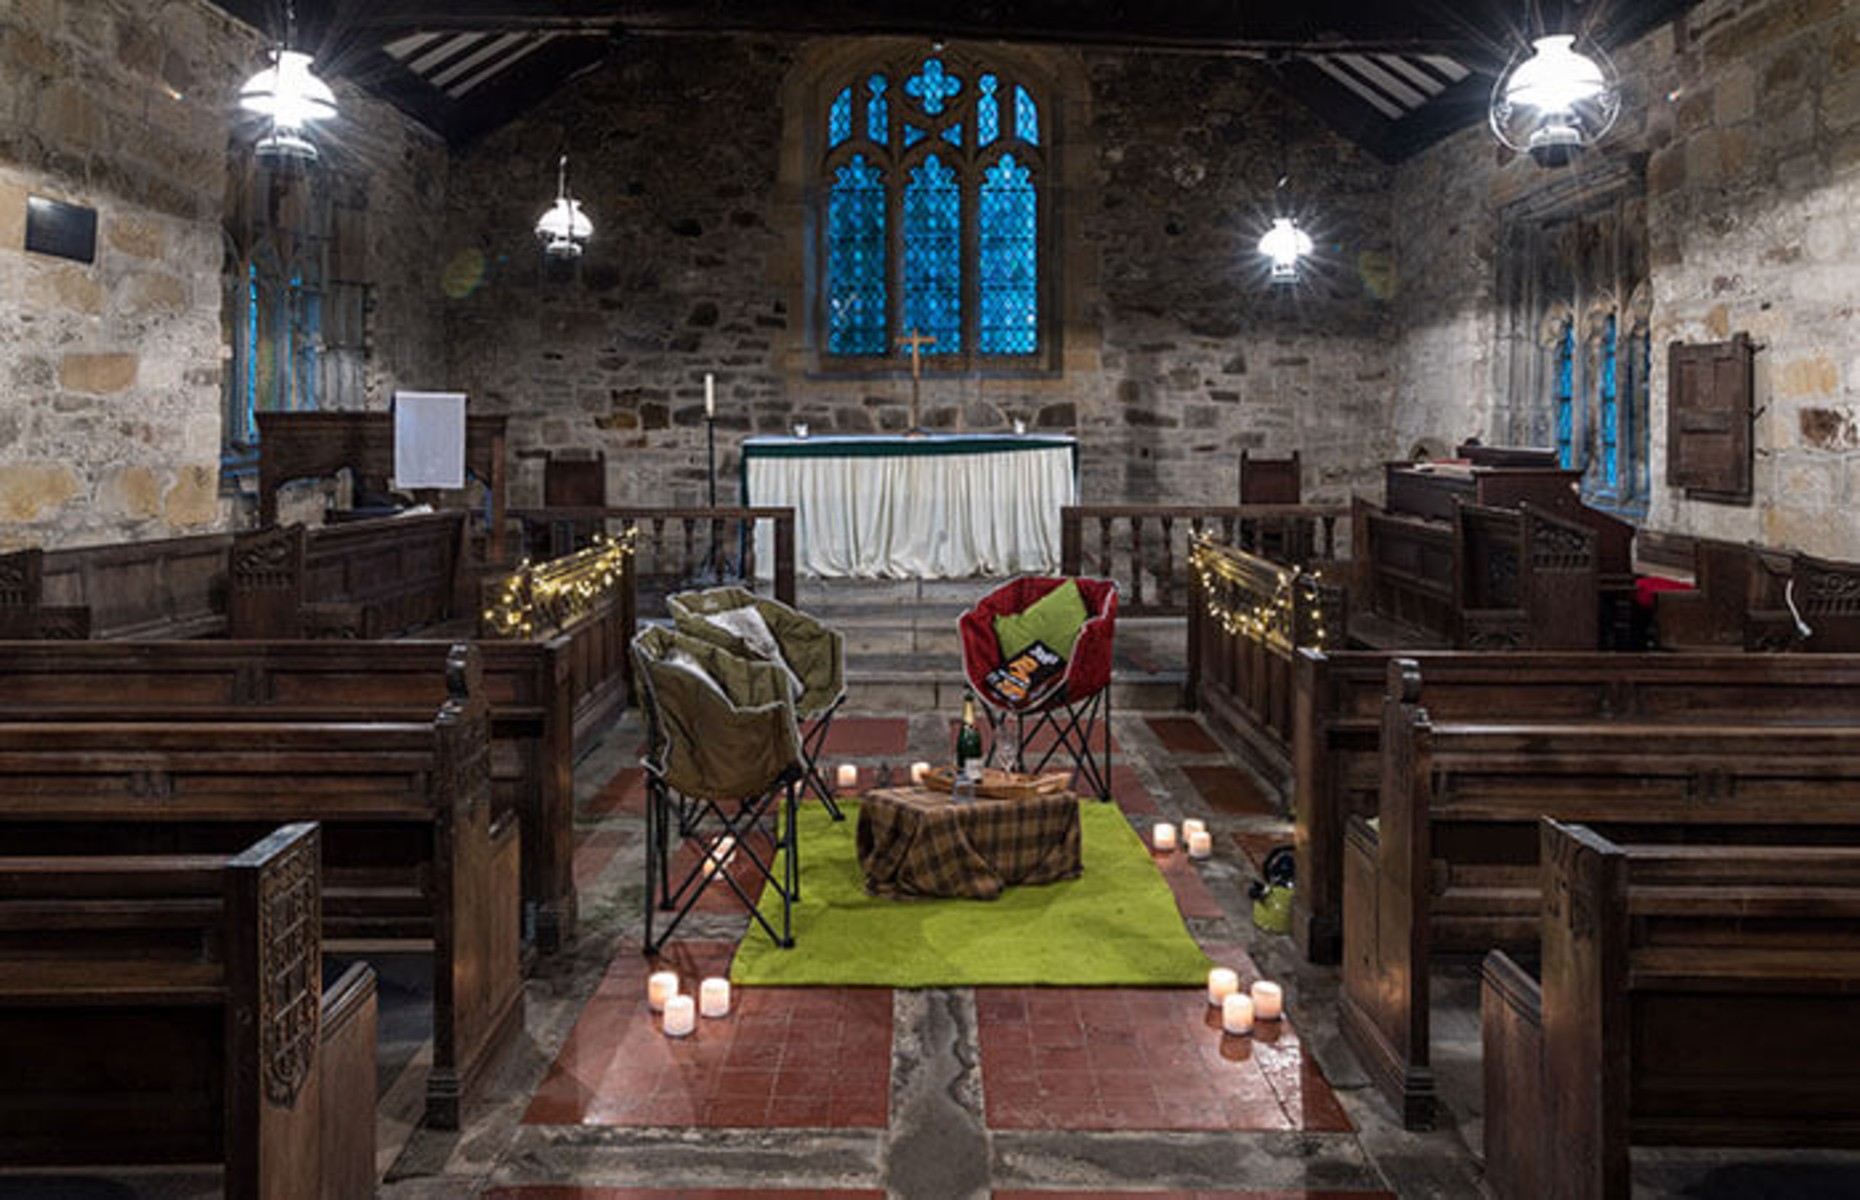 Inside St Leonards (Image: Champing.co.uk)